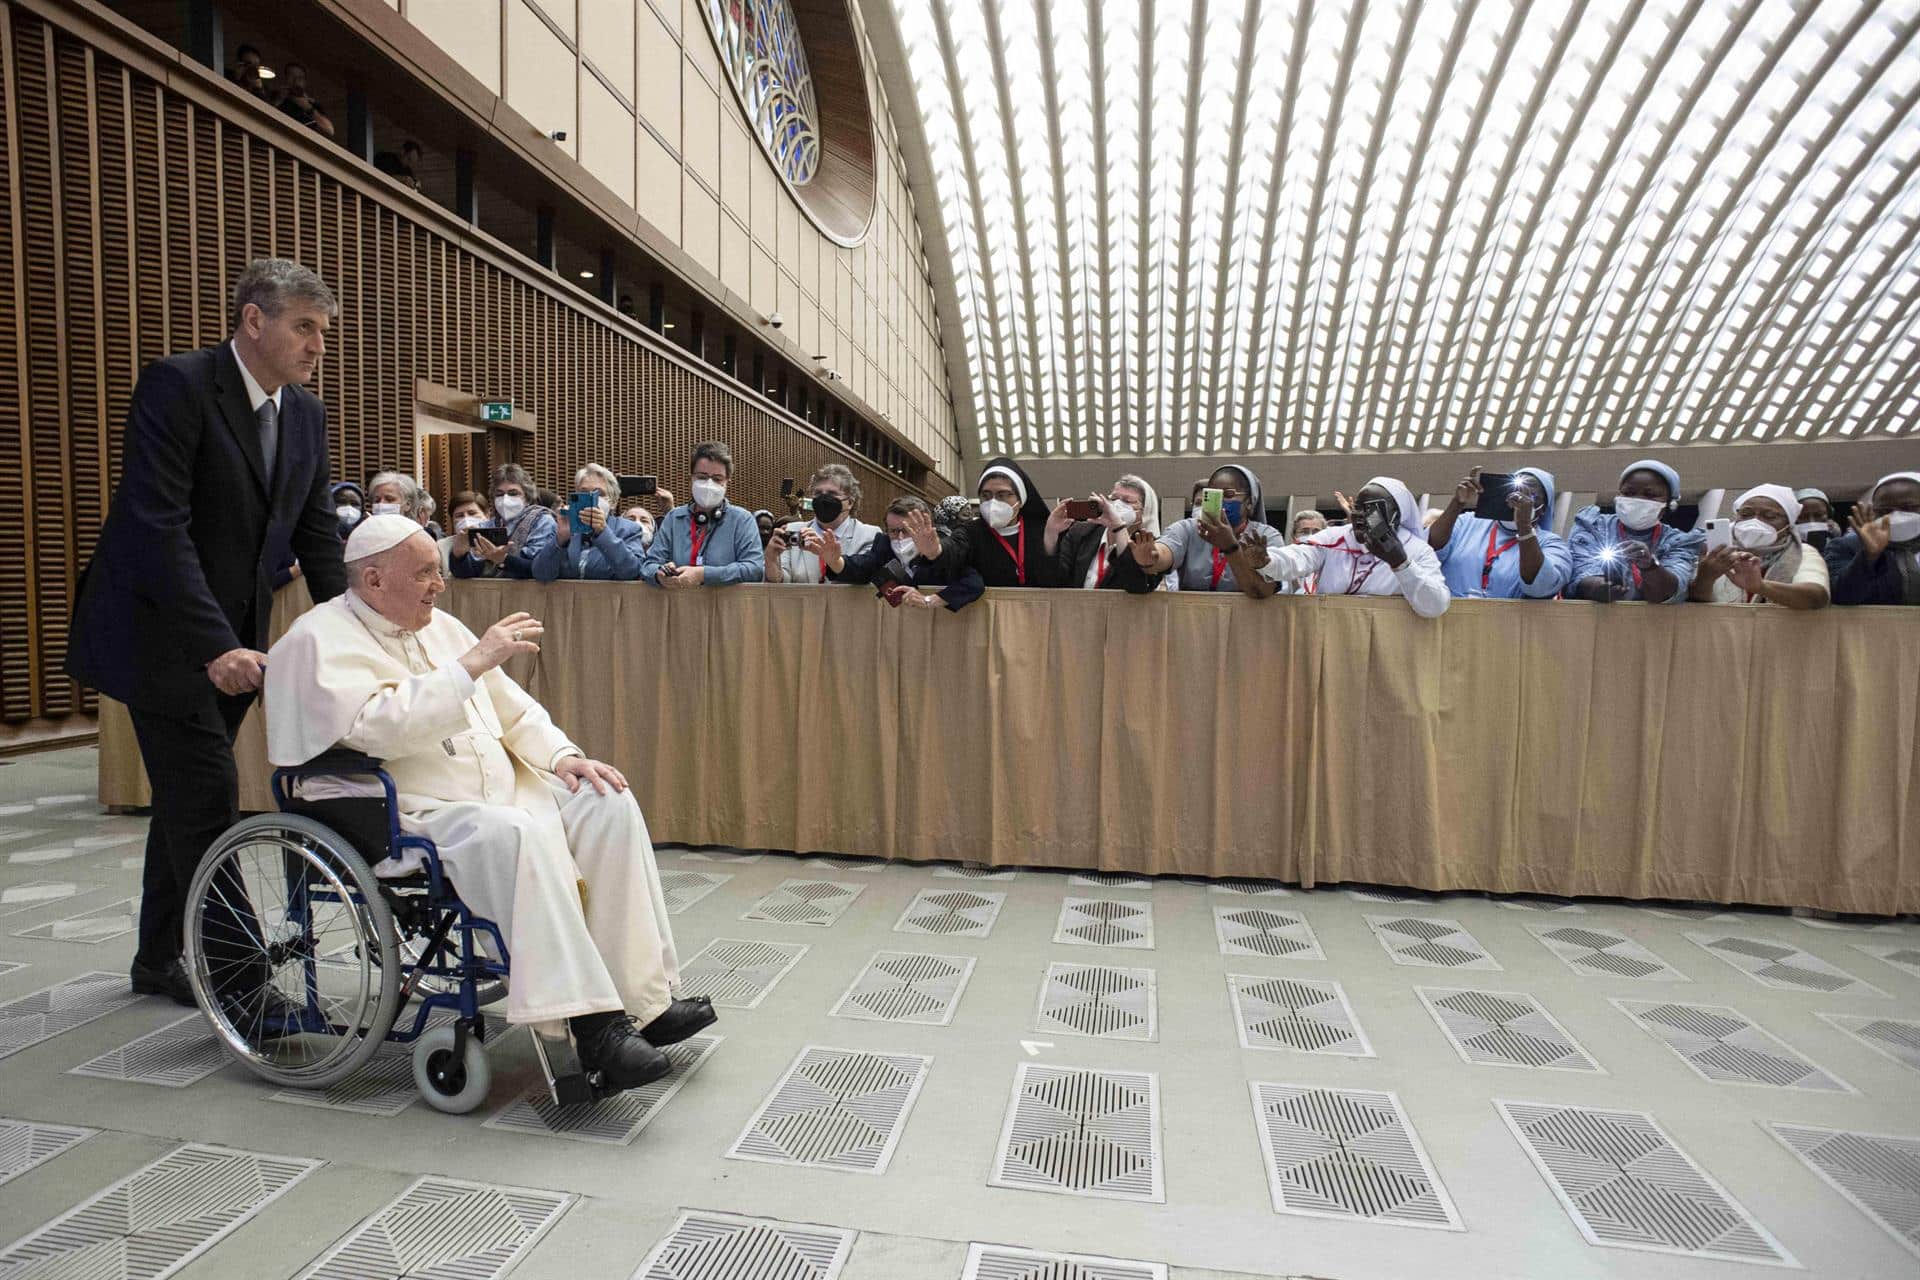 El Papa Francisco en silla de ruedas en una audiencia en el Vaticano